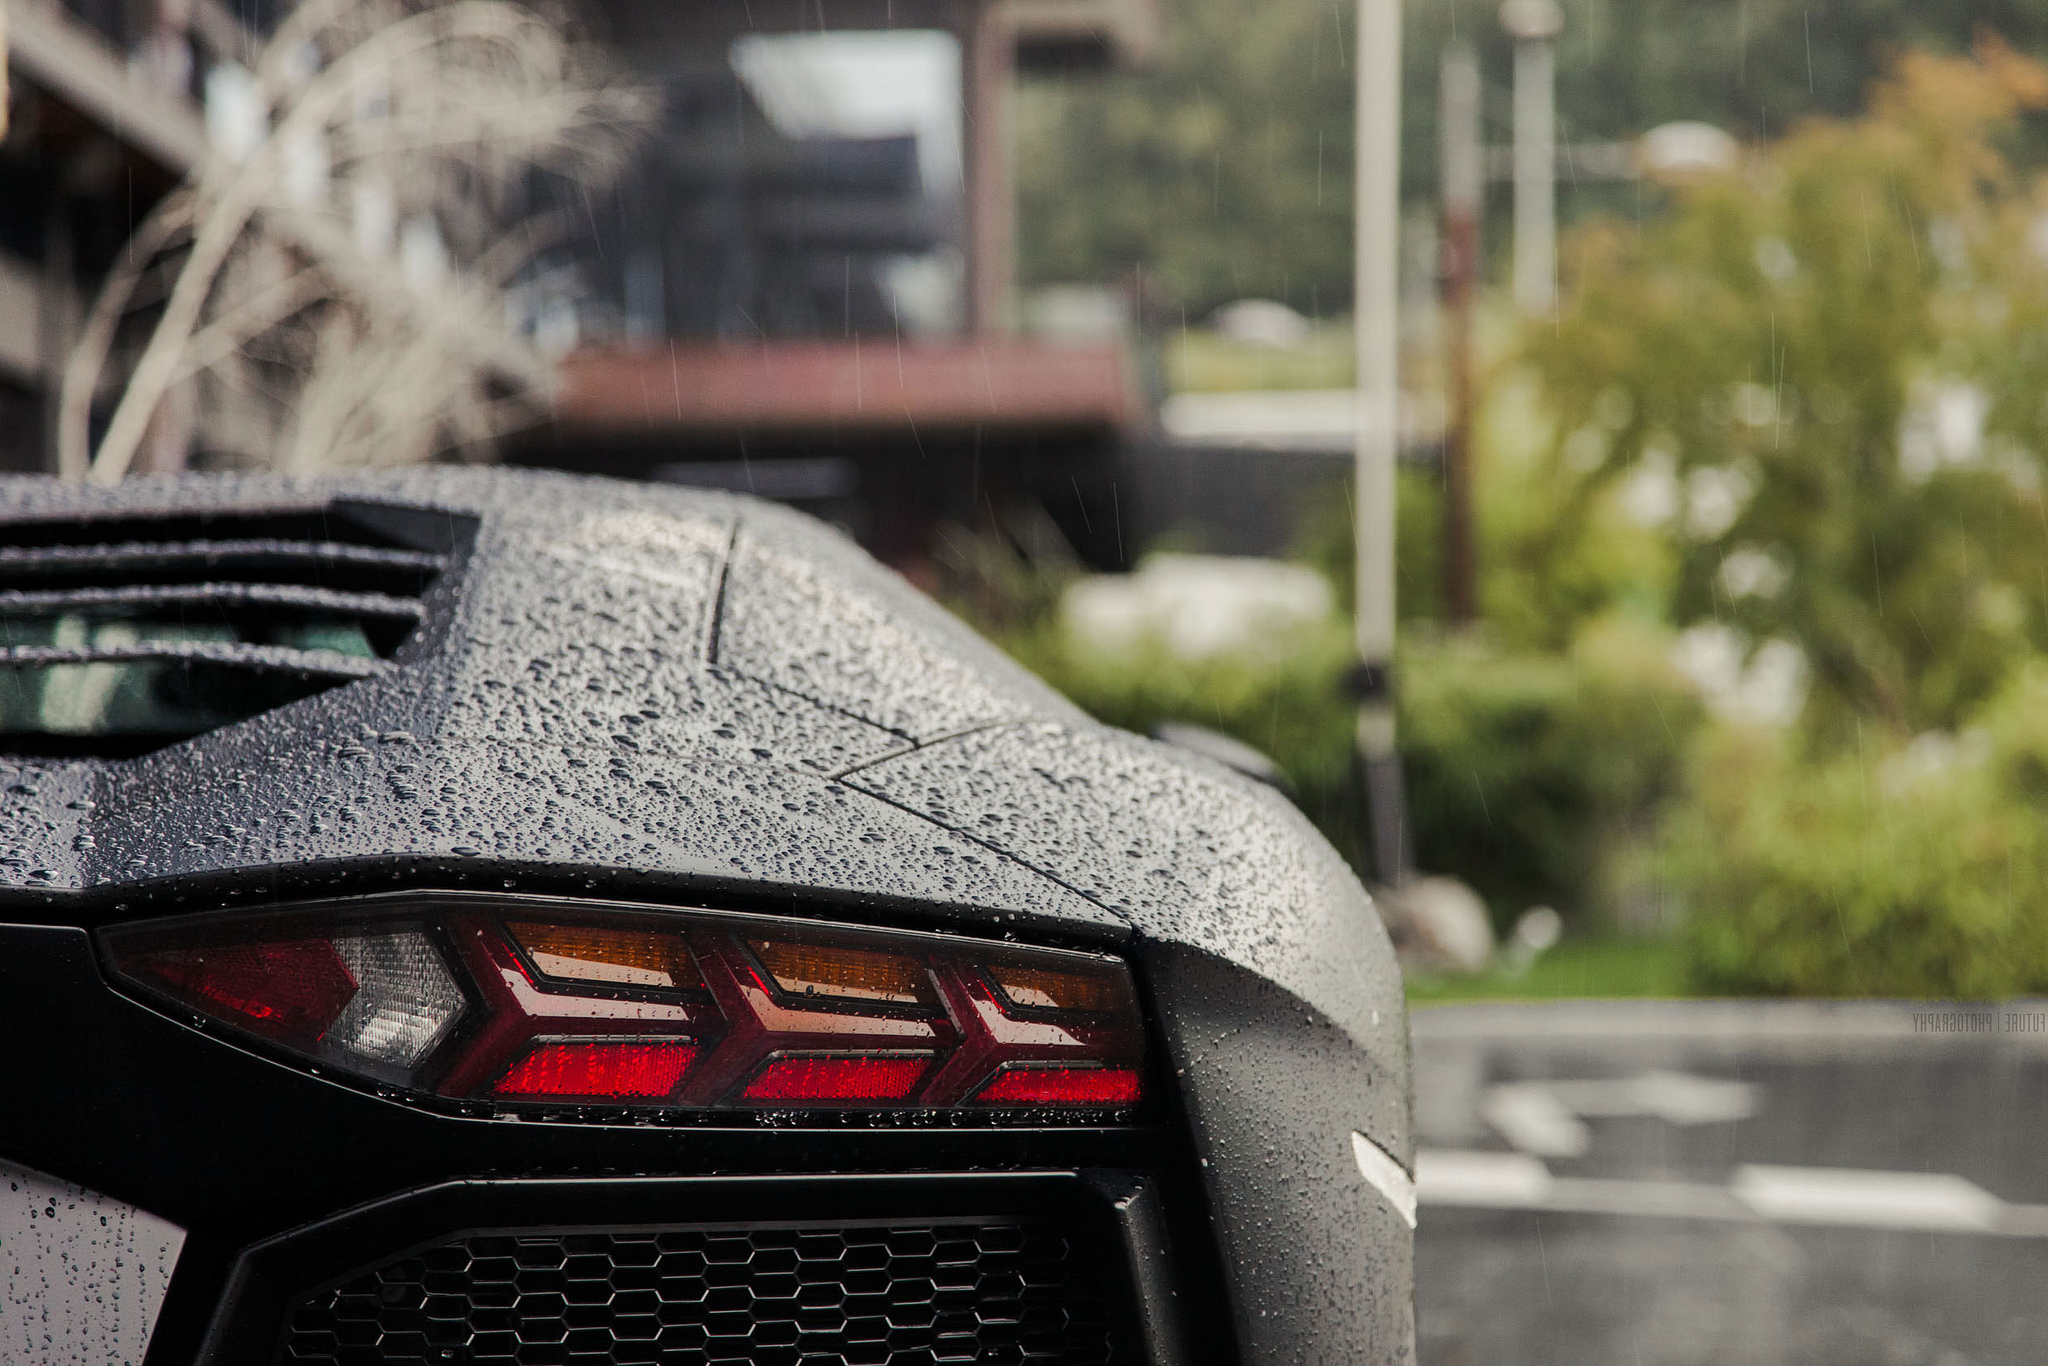  Lamborghini Aventador Full HD Wallpaper